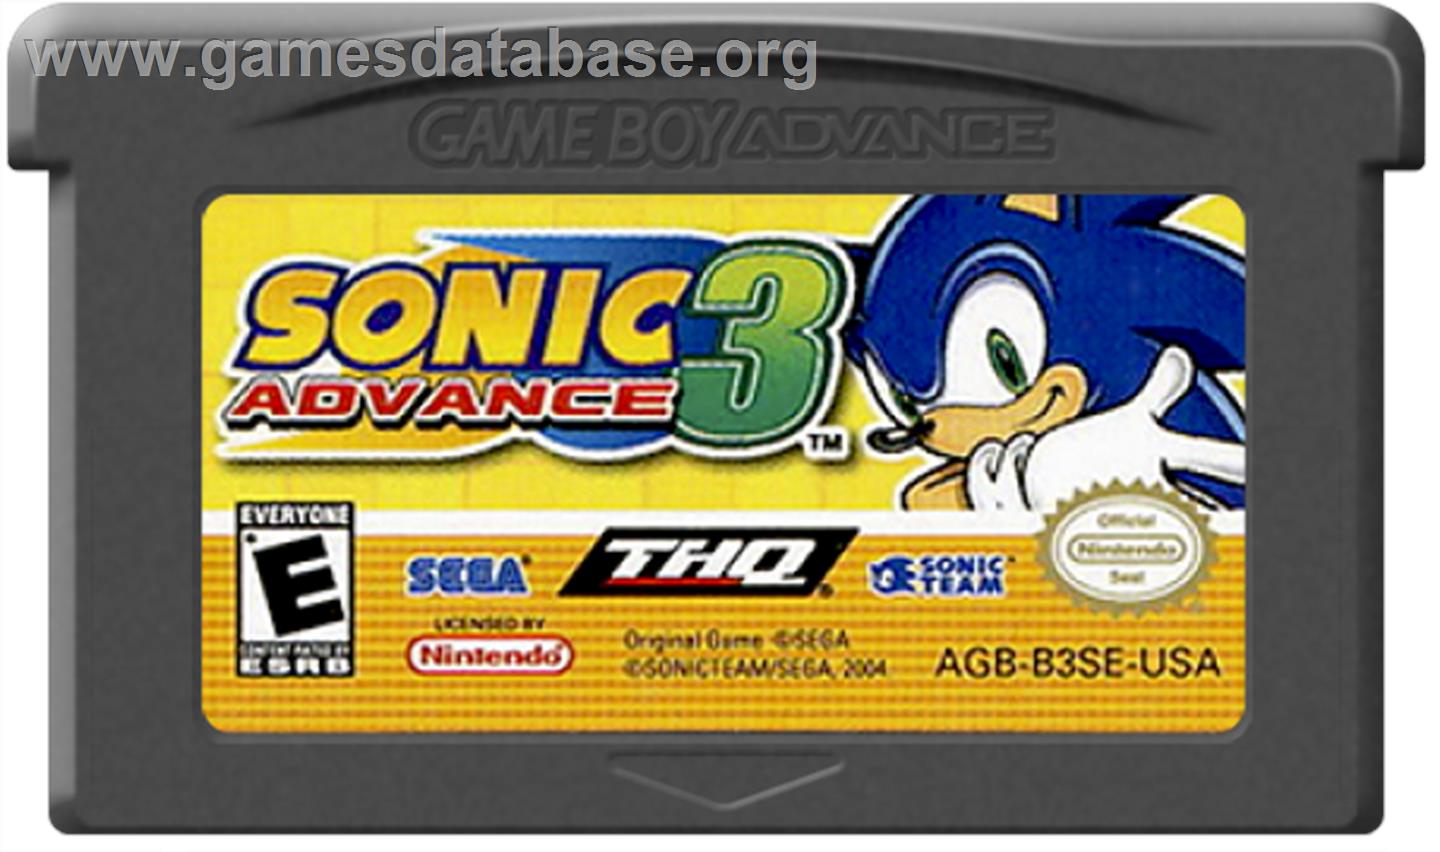 Sonic Advance 3 - Nintendo Game Boy Advance - Artwork - Cartridge